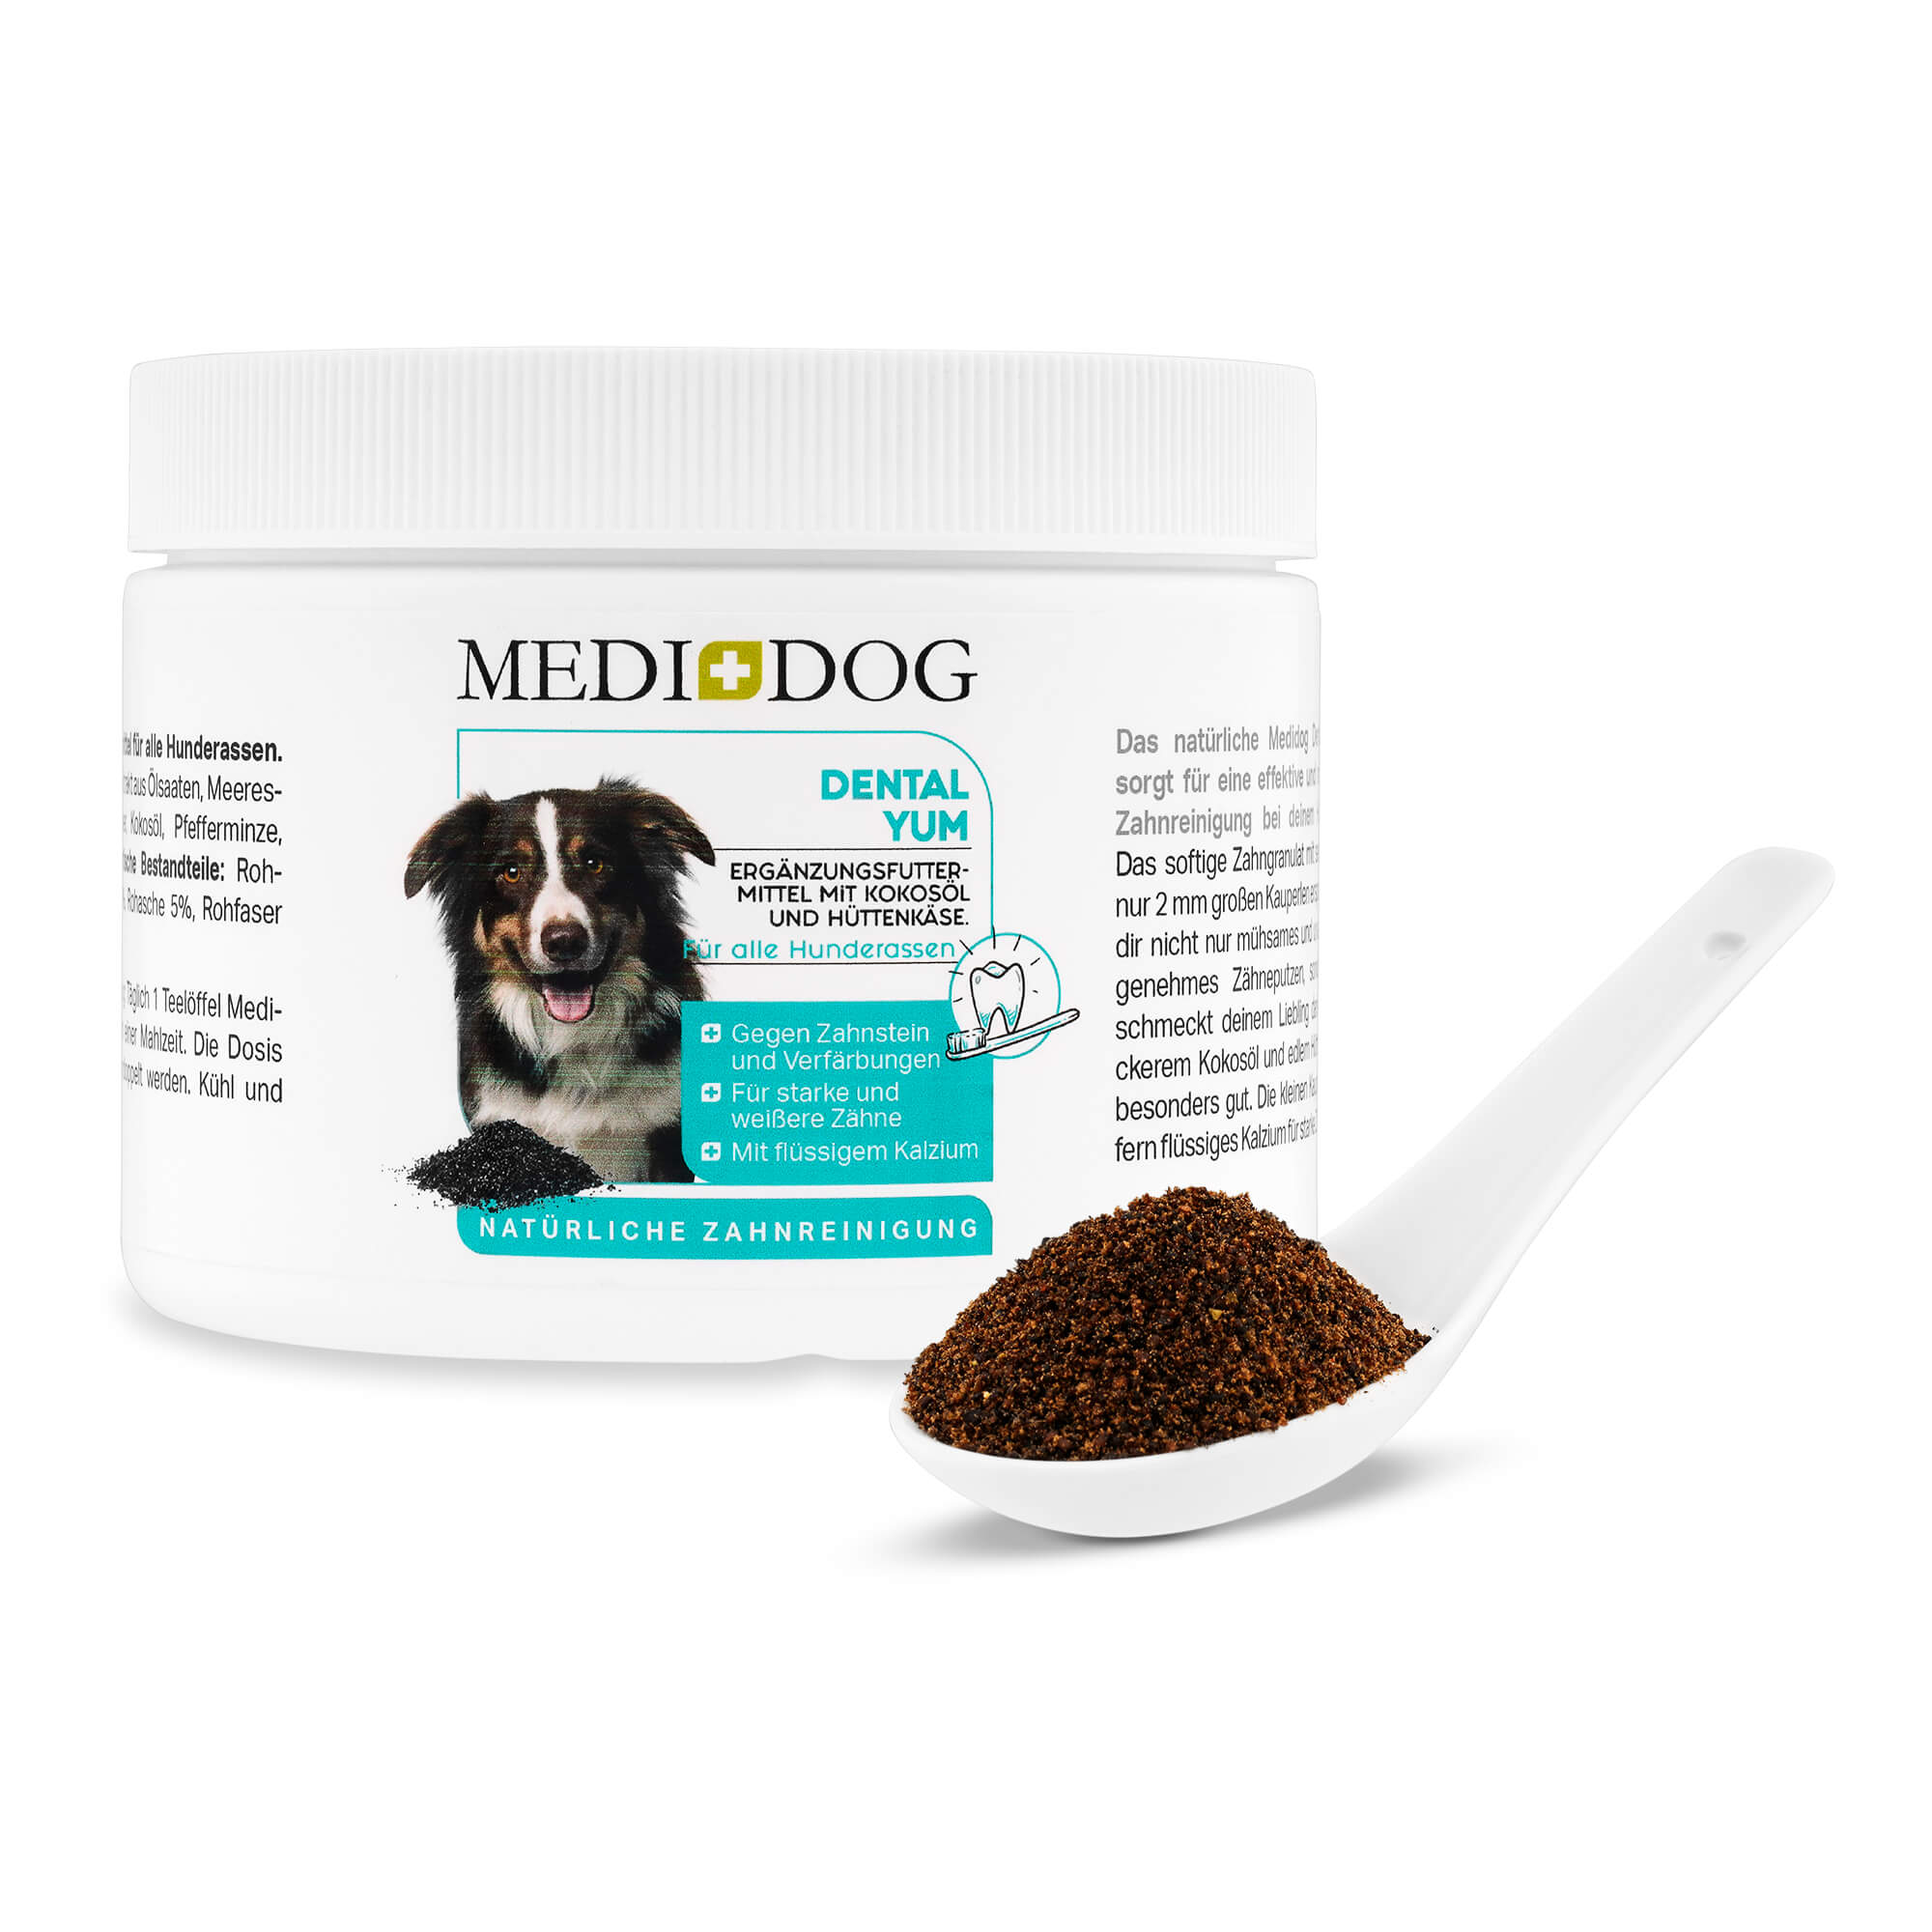 Medidog Dental Yum - Natürliche Zahnpflege für Hunde